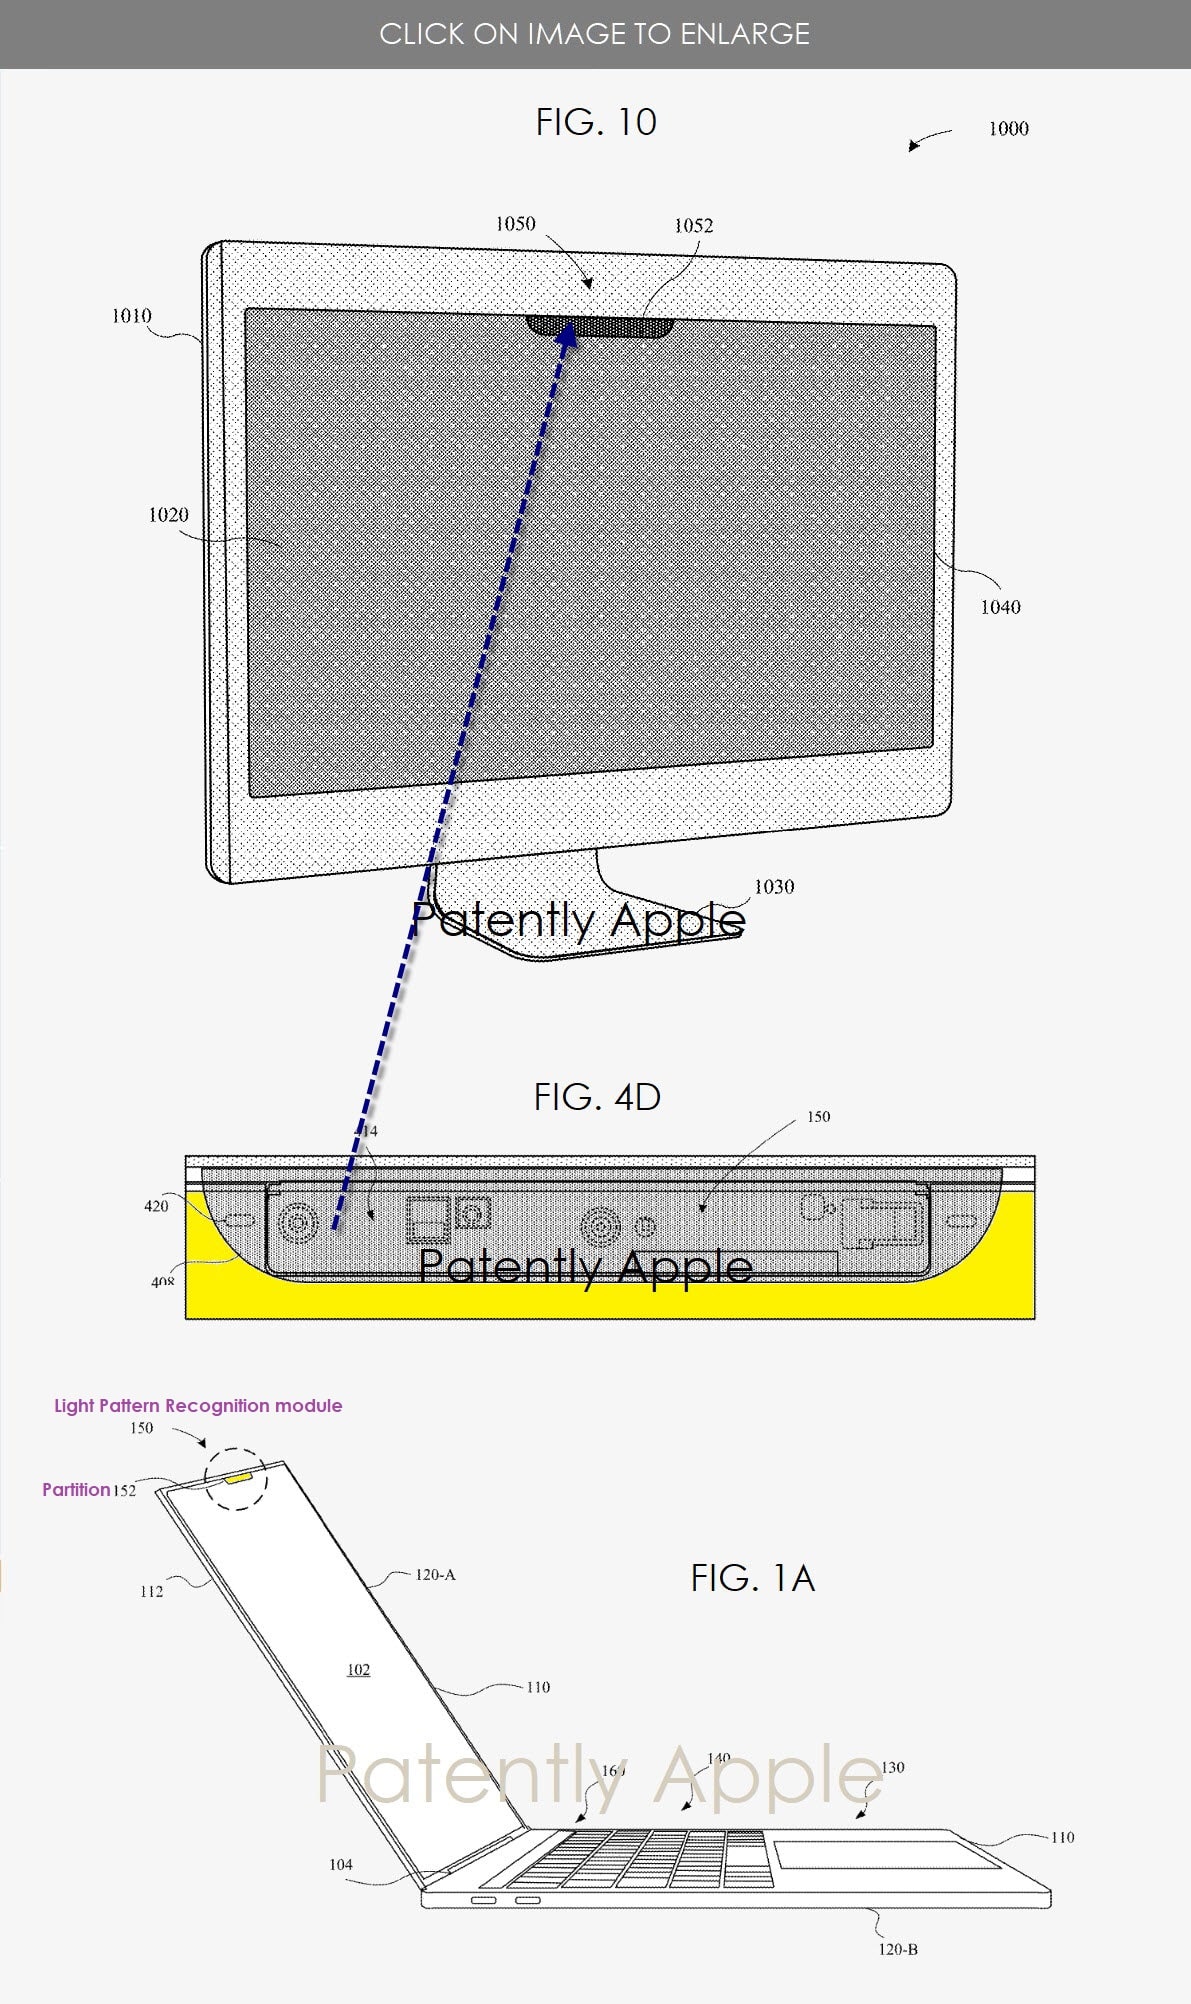 Patente de iMac e MacBook com Face ID